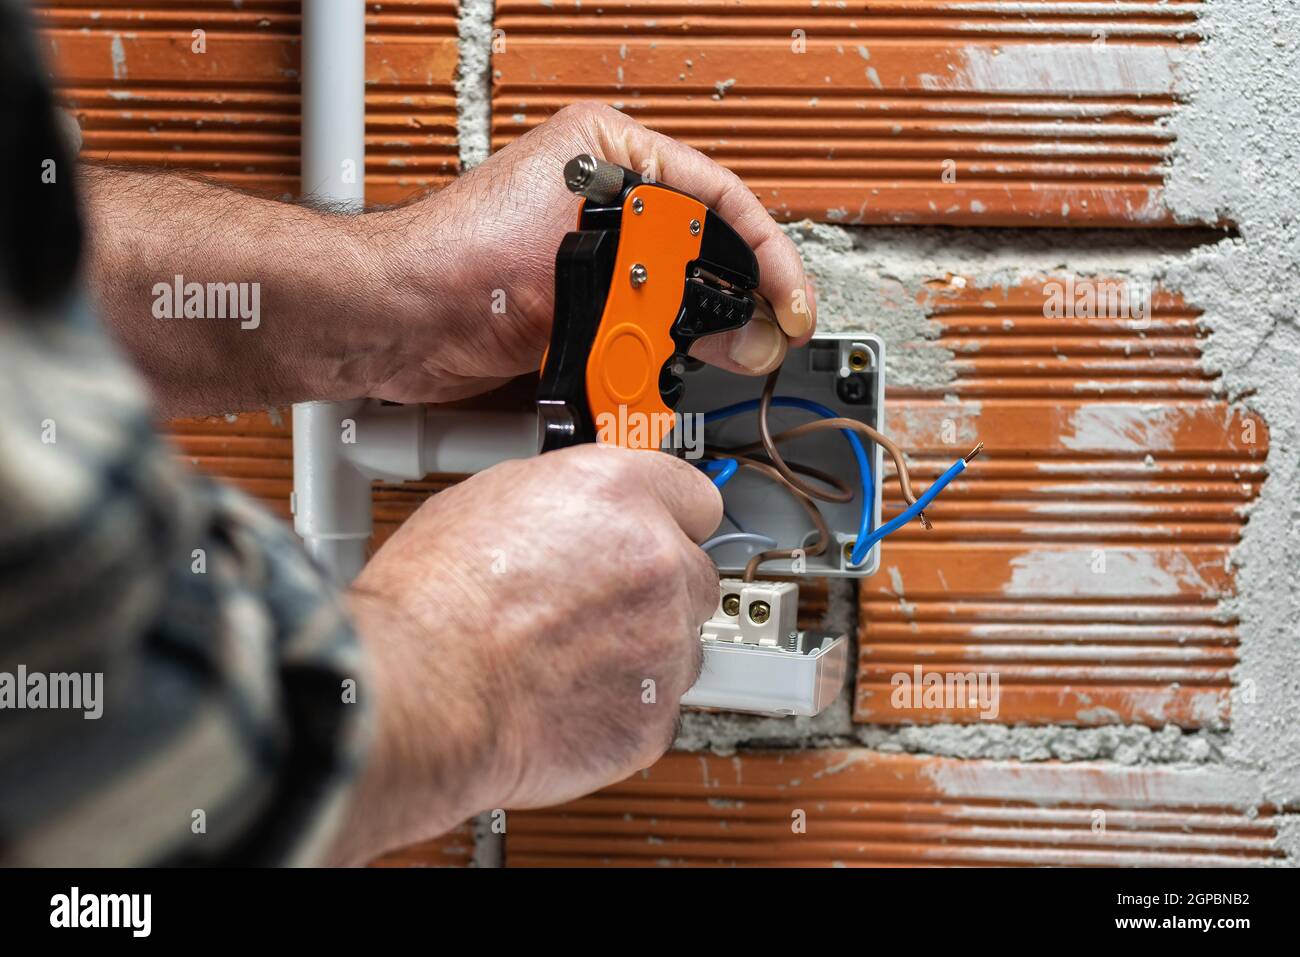 Elektriker Arbeiter bei der Arbeit mit Abisolierer bereitet die elektrischen Kabel der häuslichen elektrischen Anlage. Bauindustrie. Stockfoto